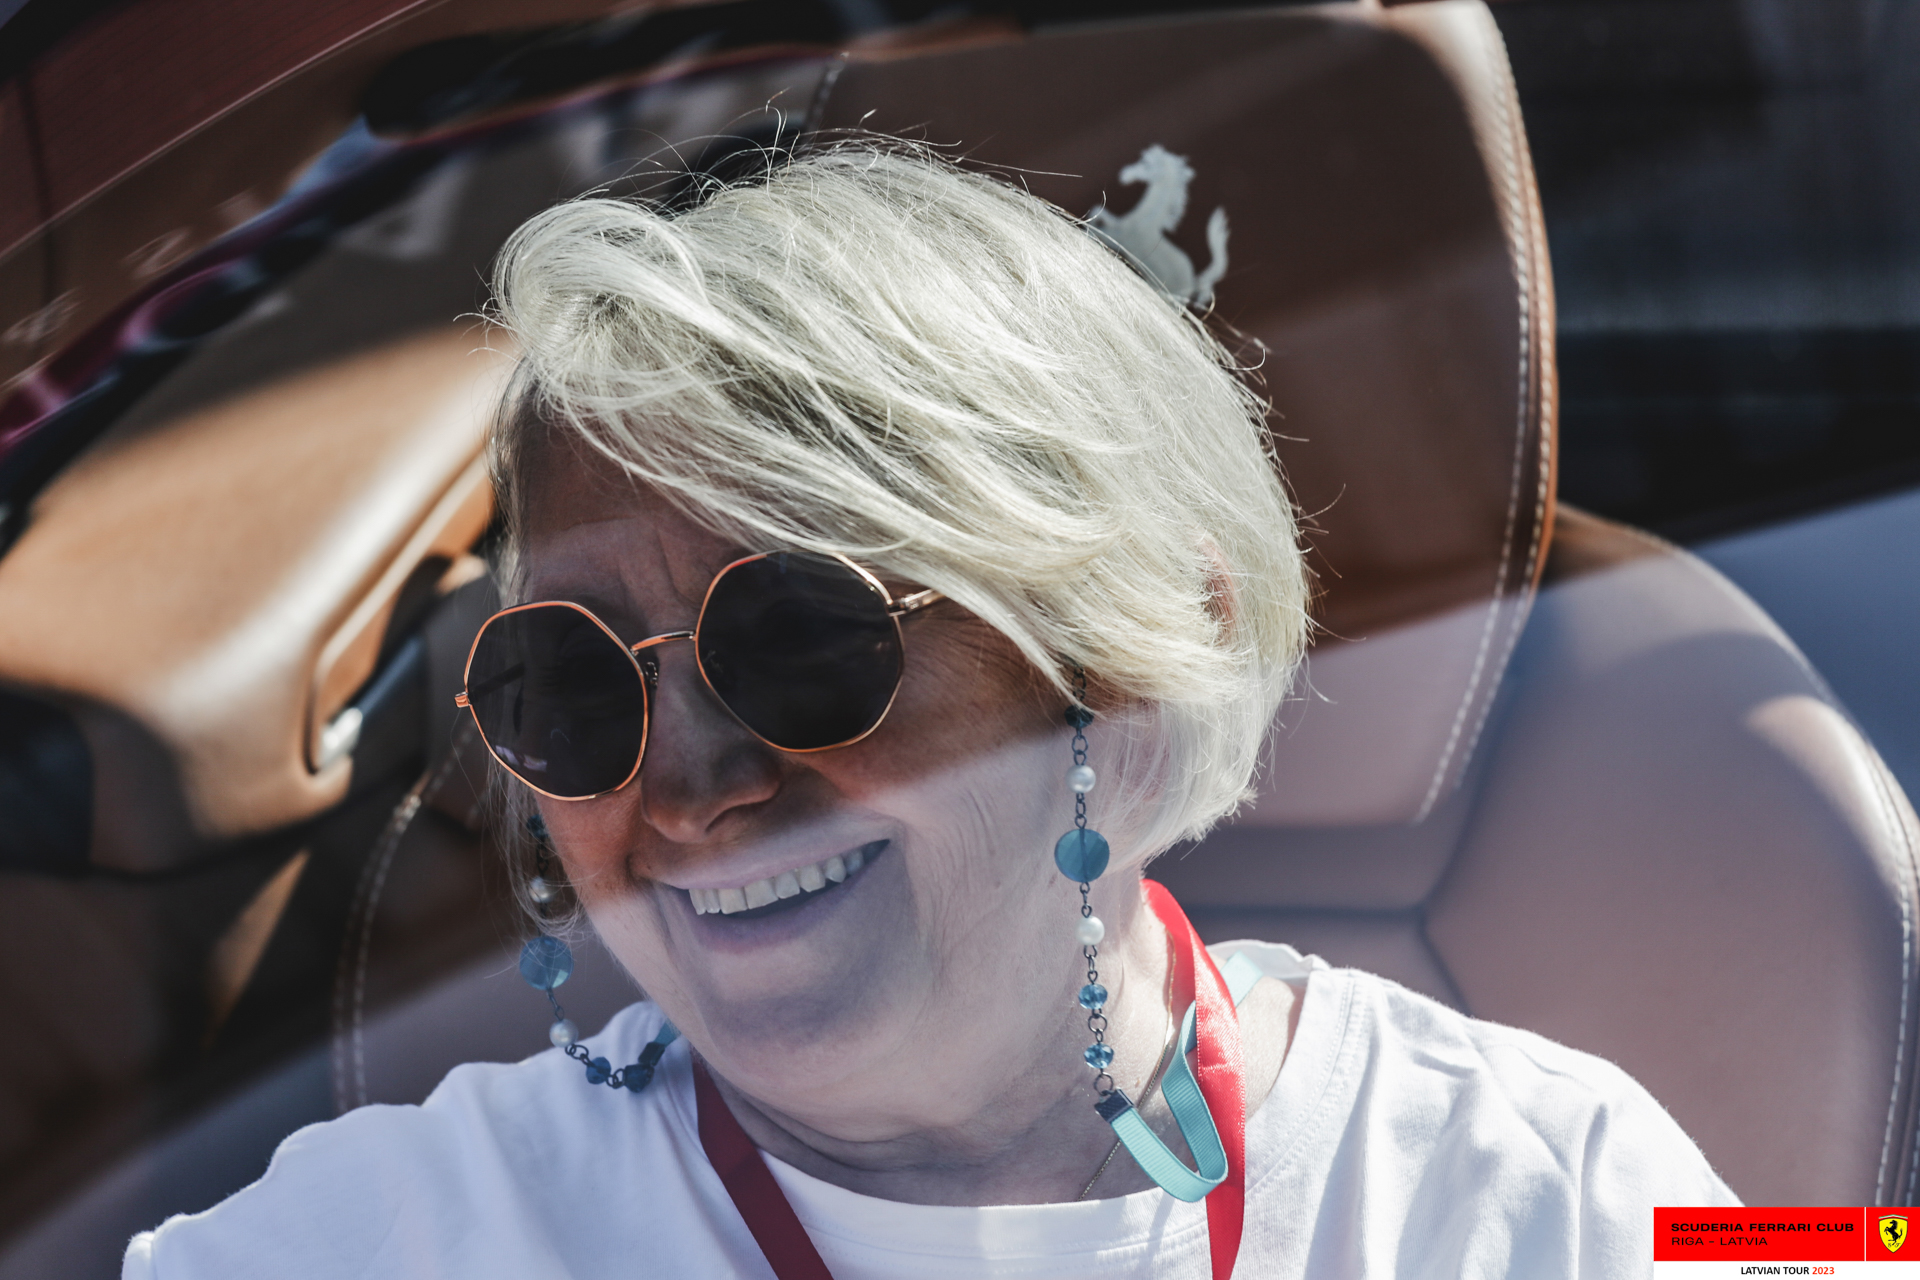 A Ferrari owner in her Ferrari. 